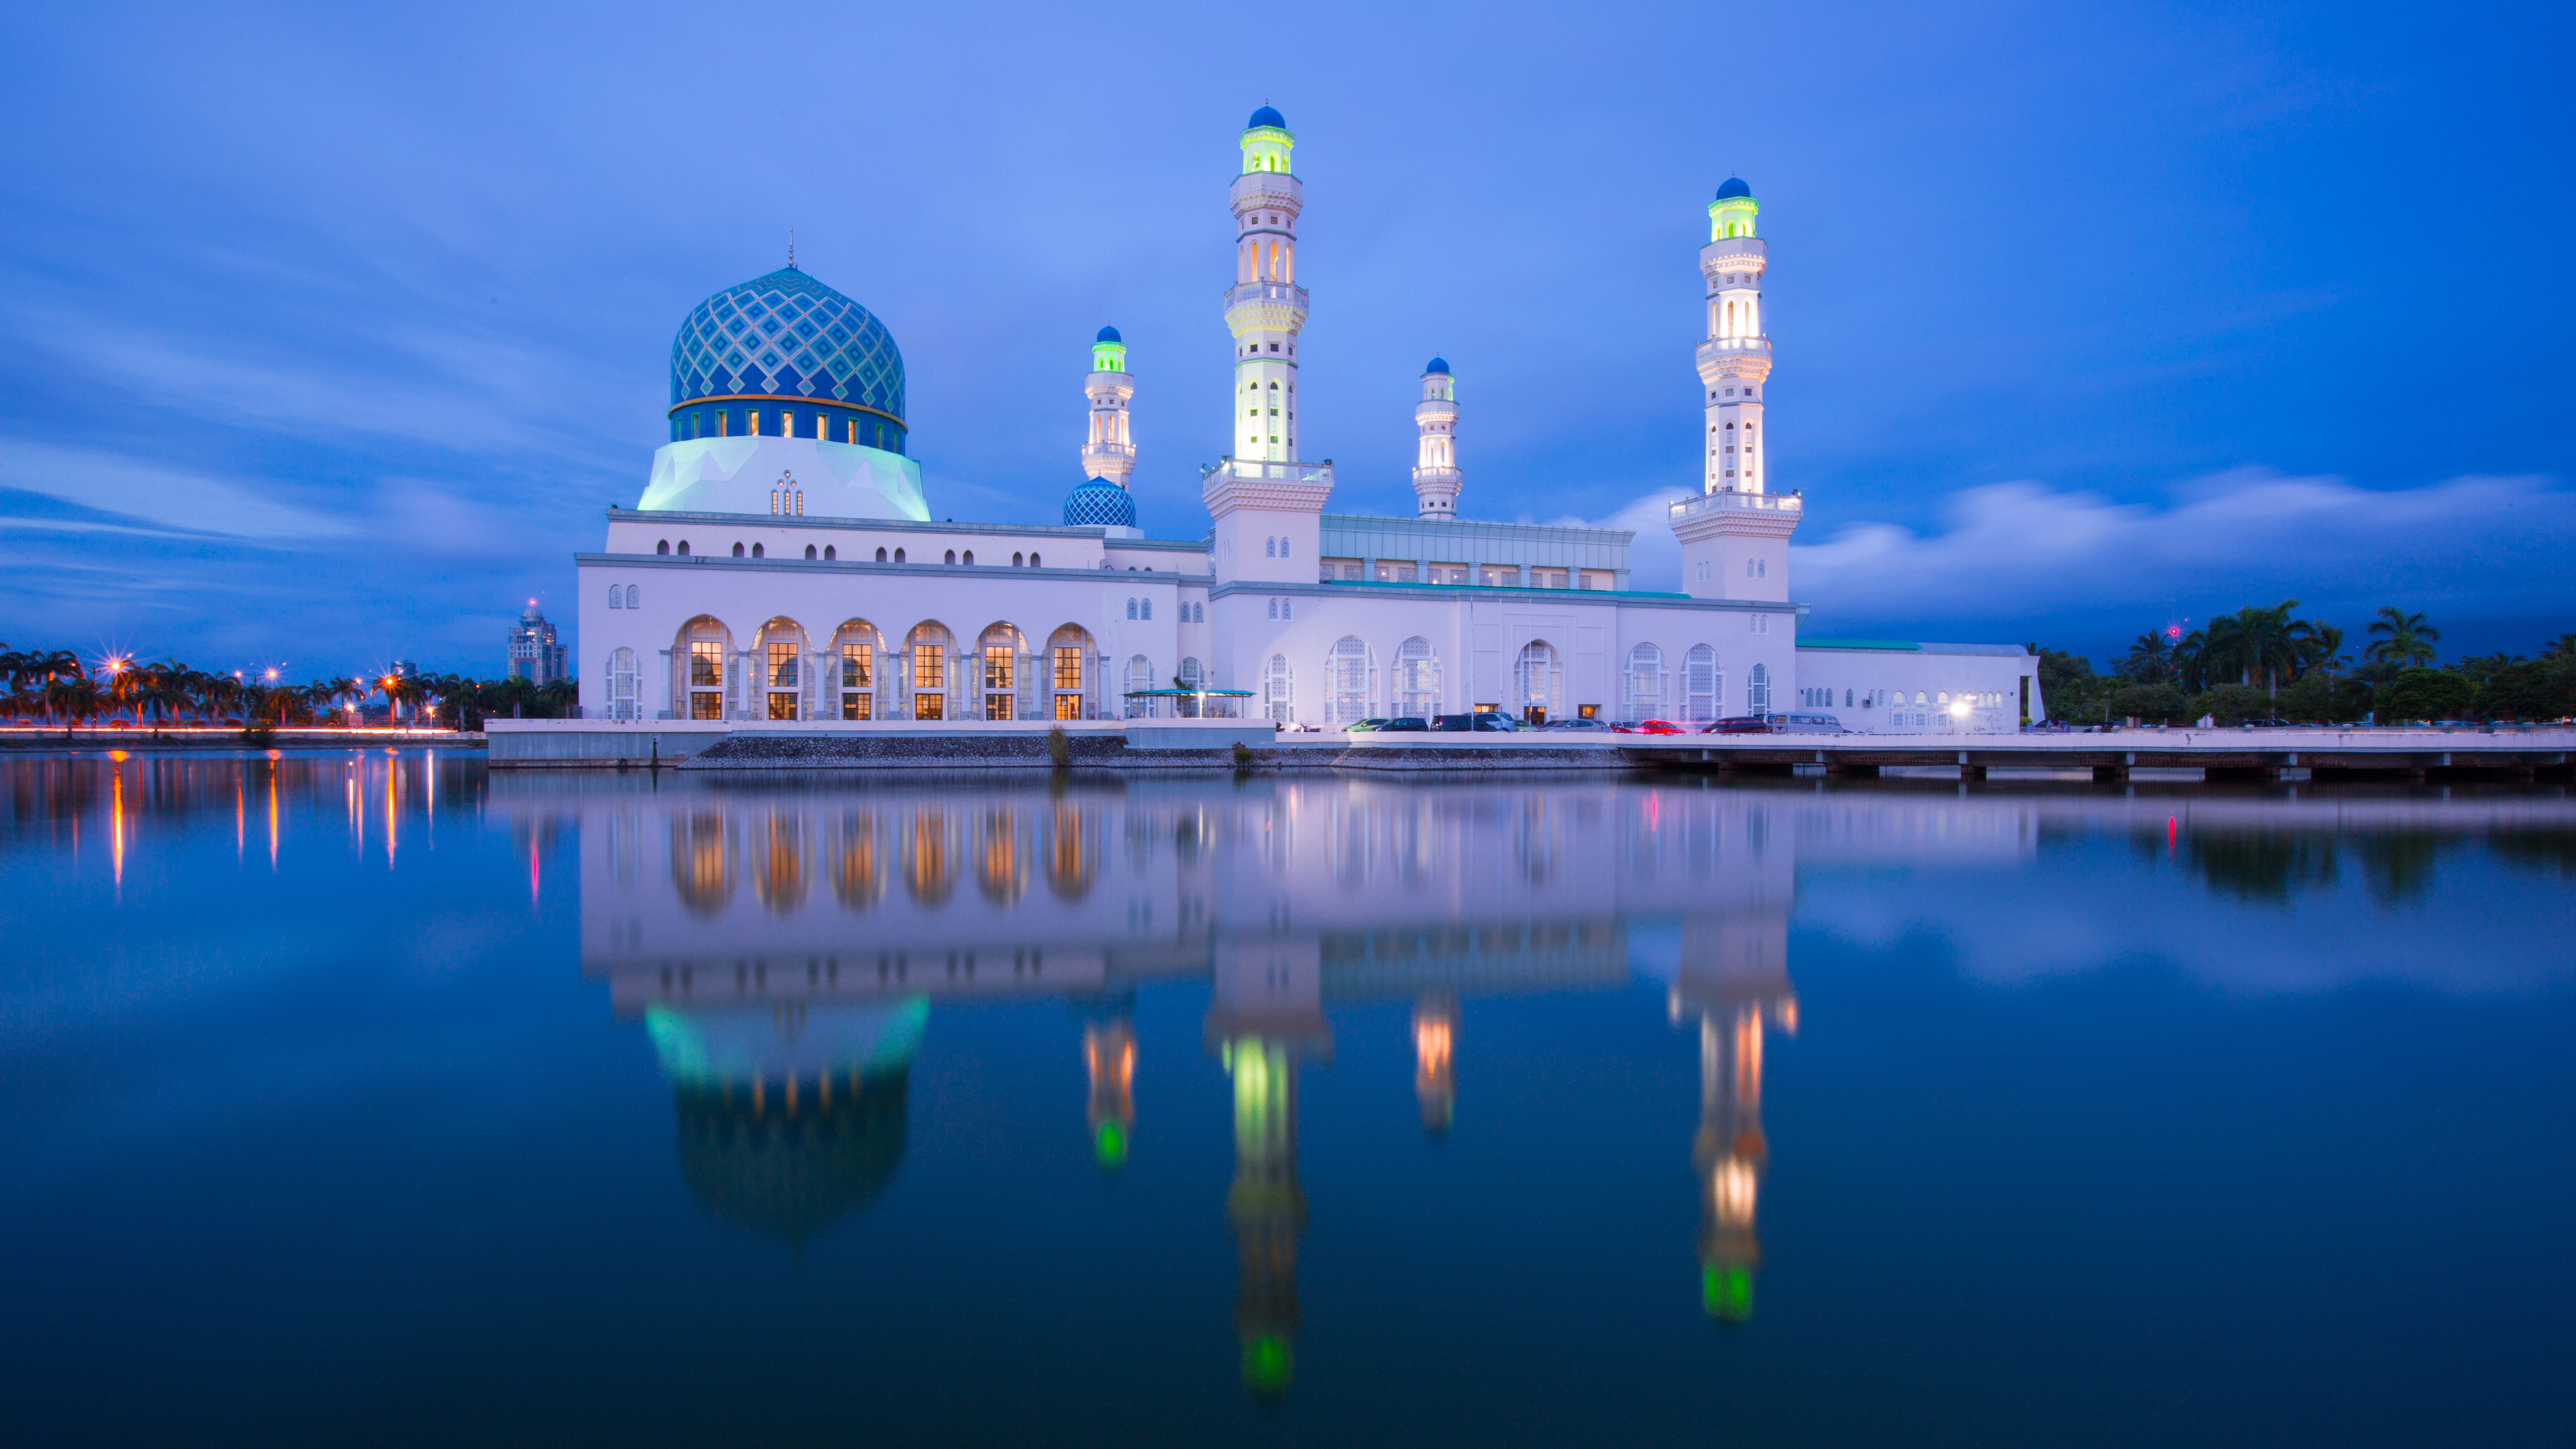 Kota Kinabalu City Mosque In Kota Kinabalu Sabah Malaysia 4k Ultra